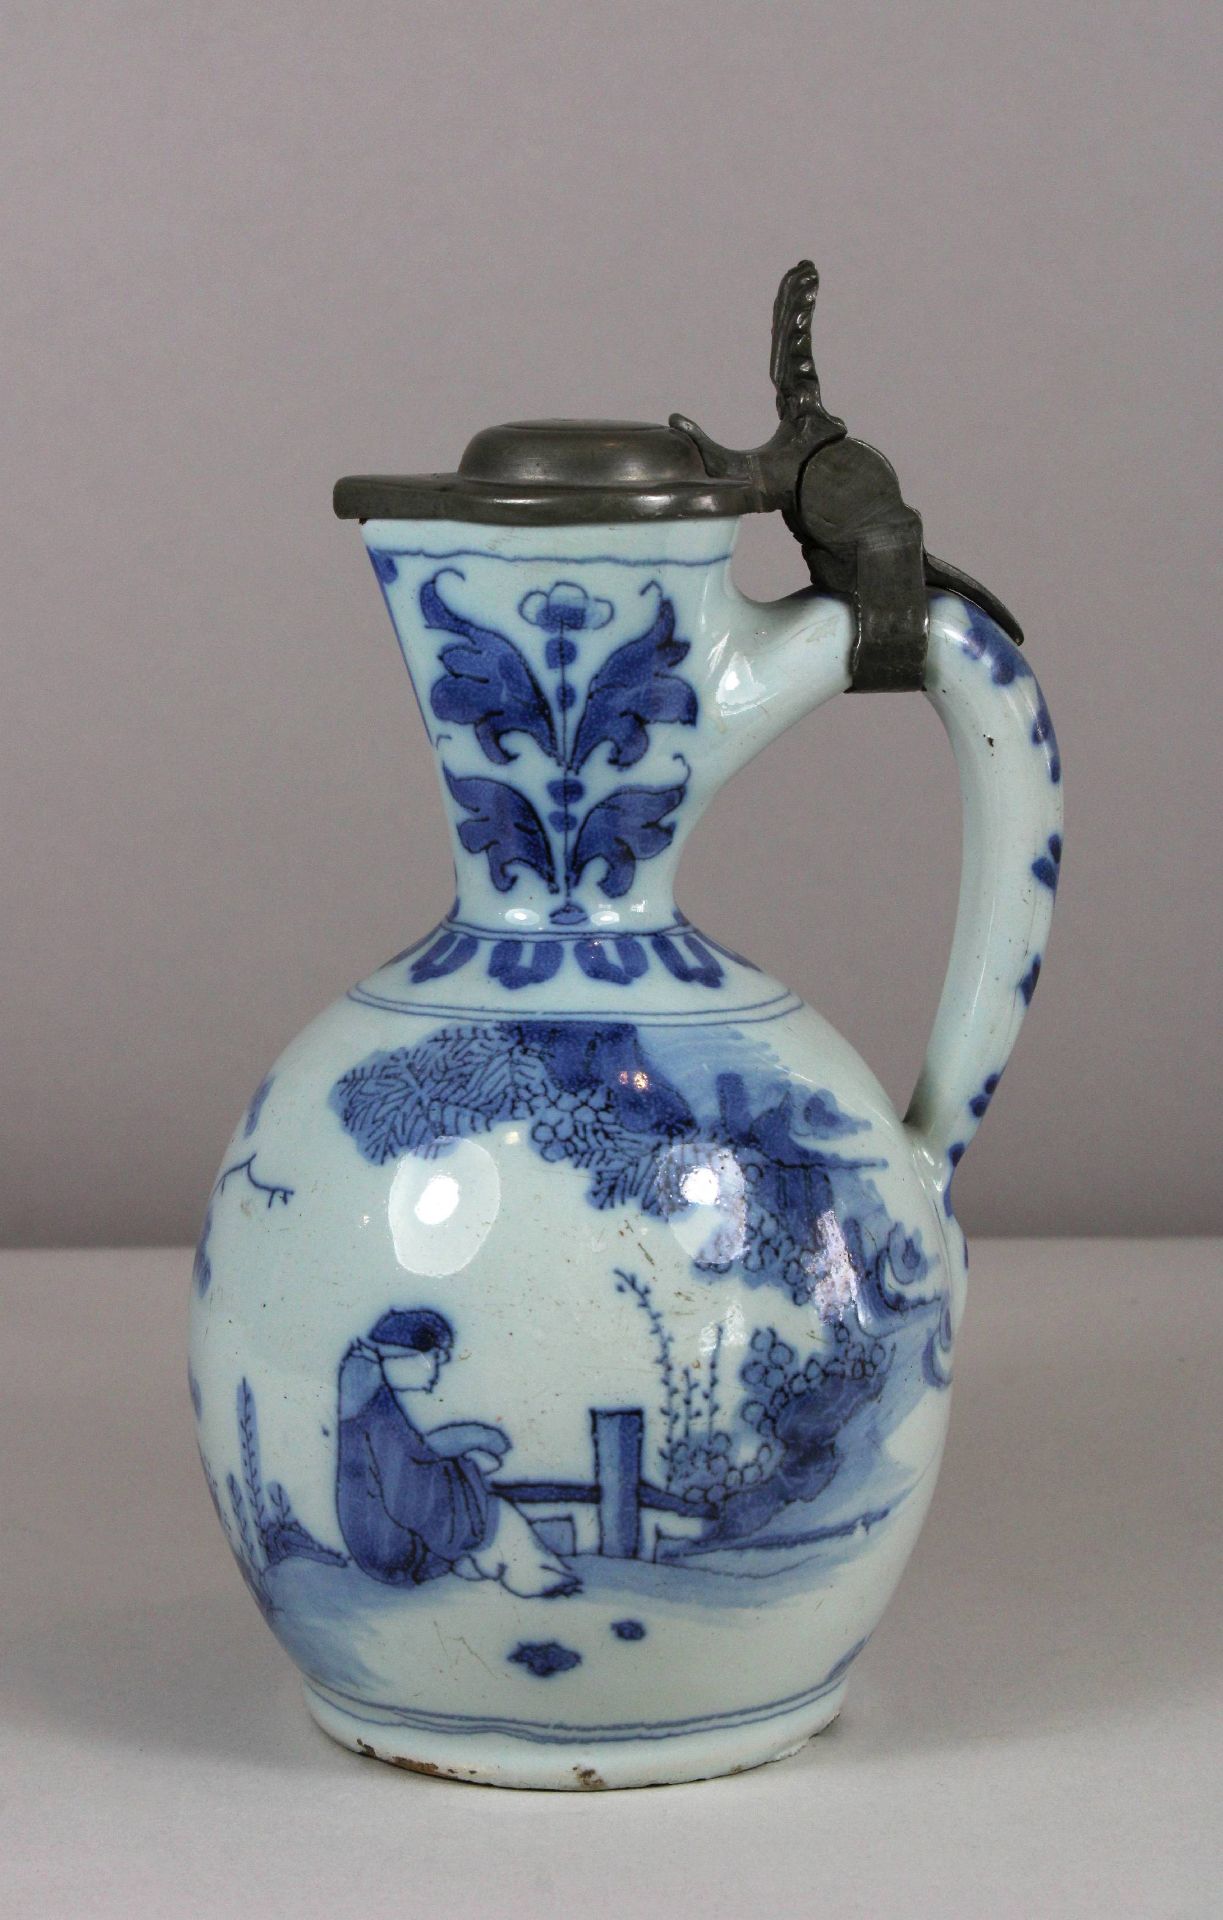 Chinoise Kanne mit Zinndeckel, 18. Jh., Fayence, wohl Delft, blau-weiß Unterglasur, figürliche